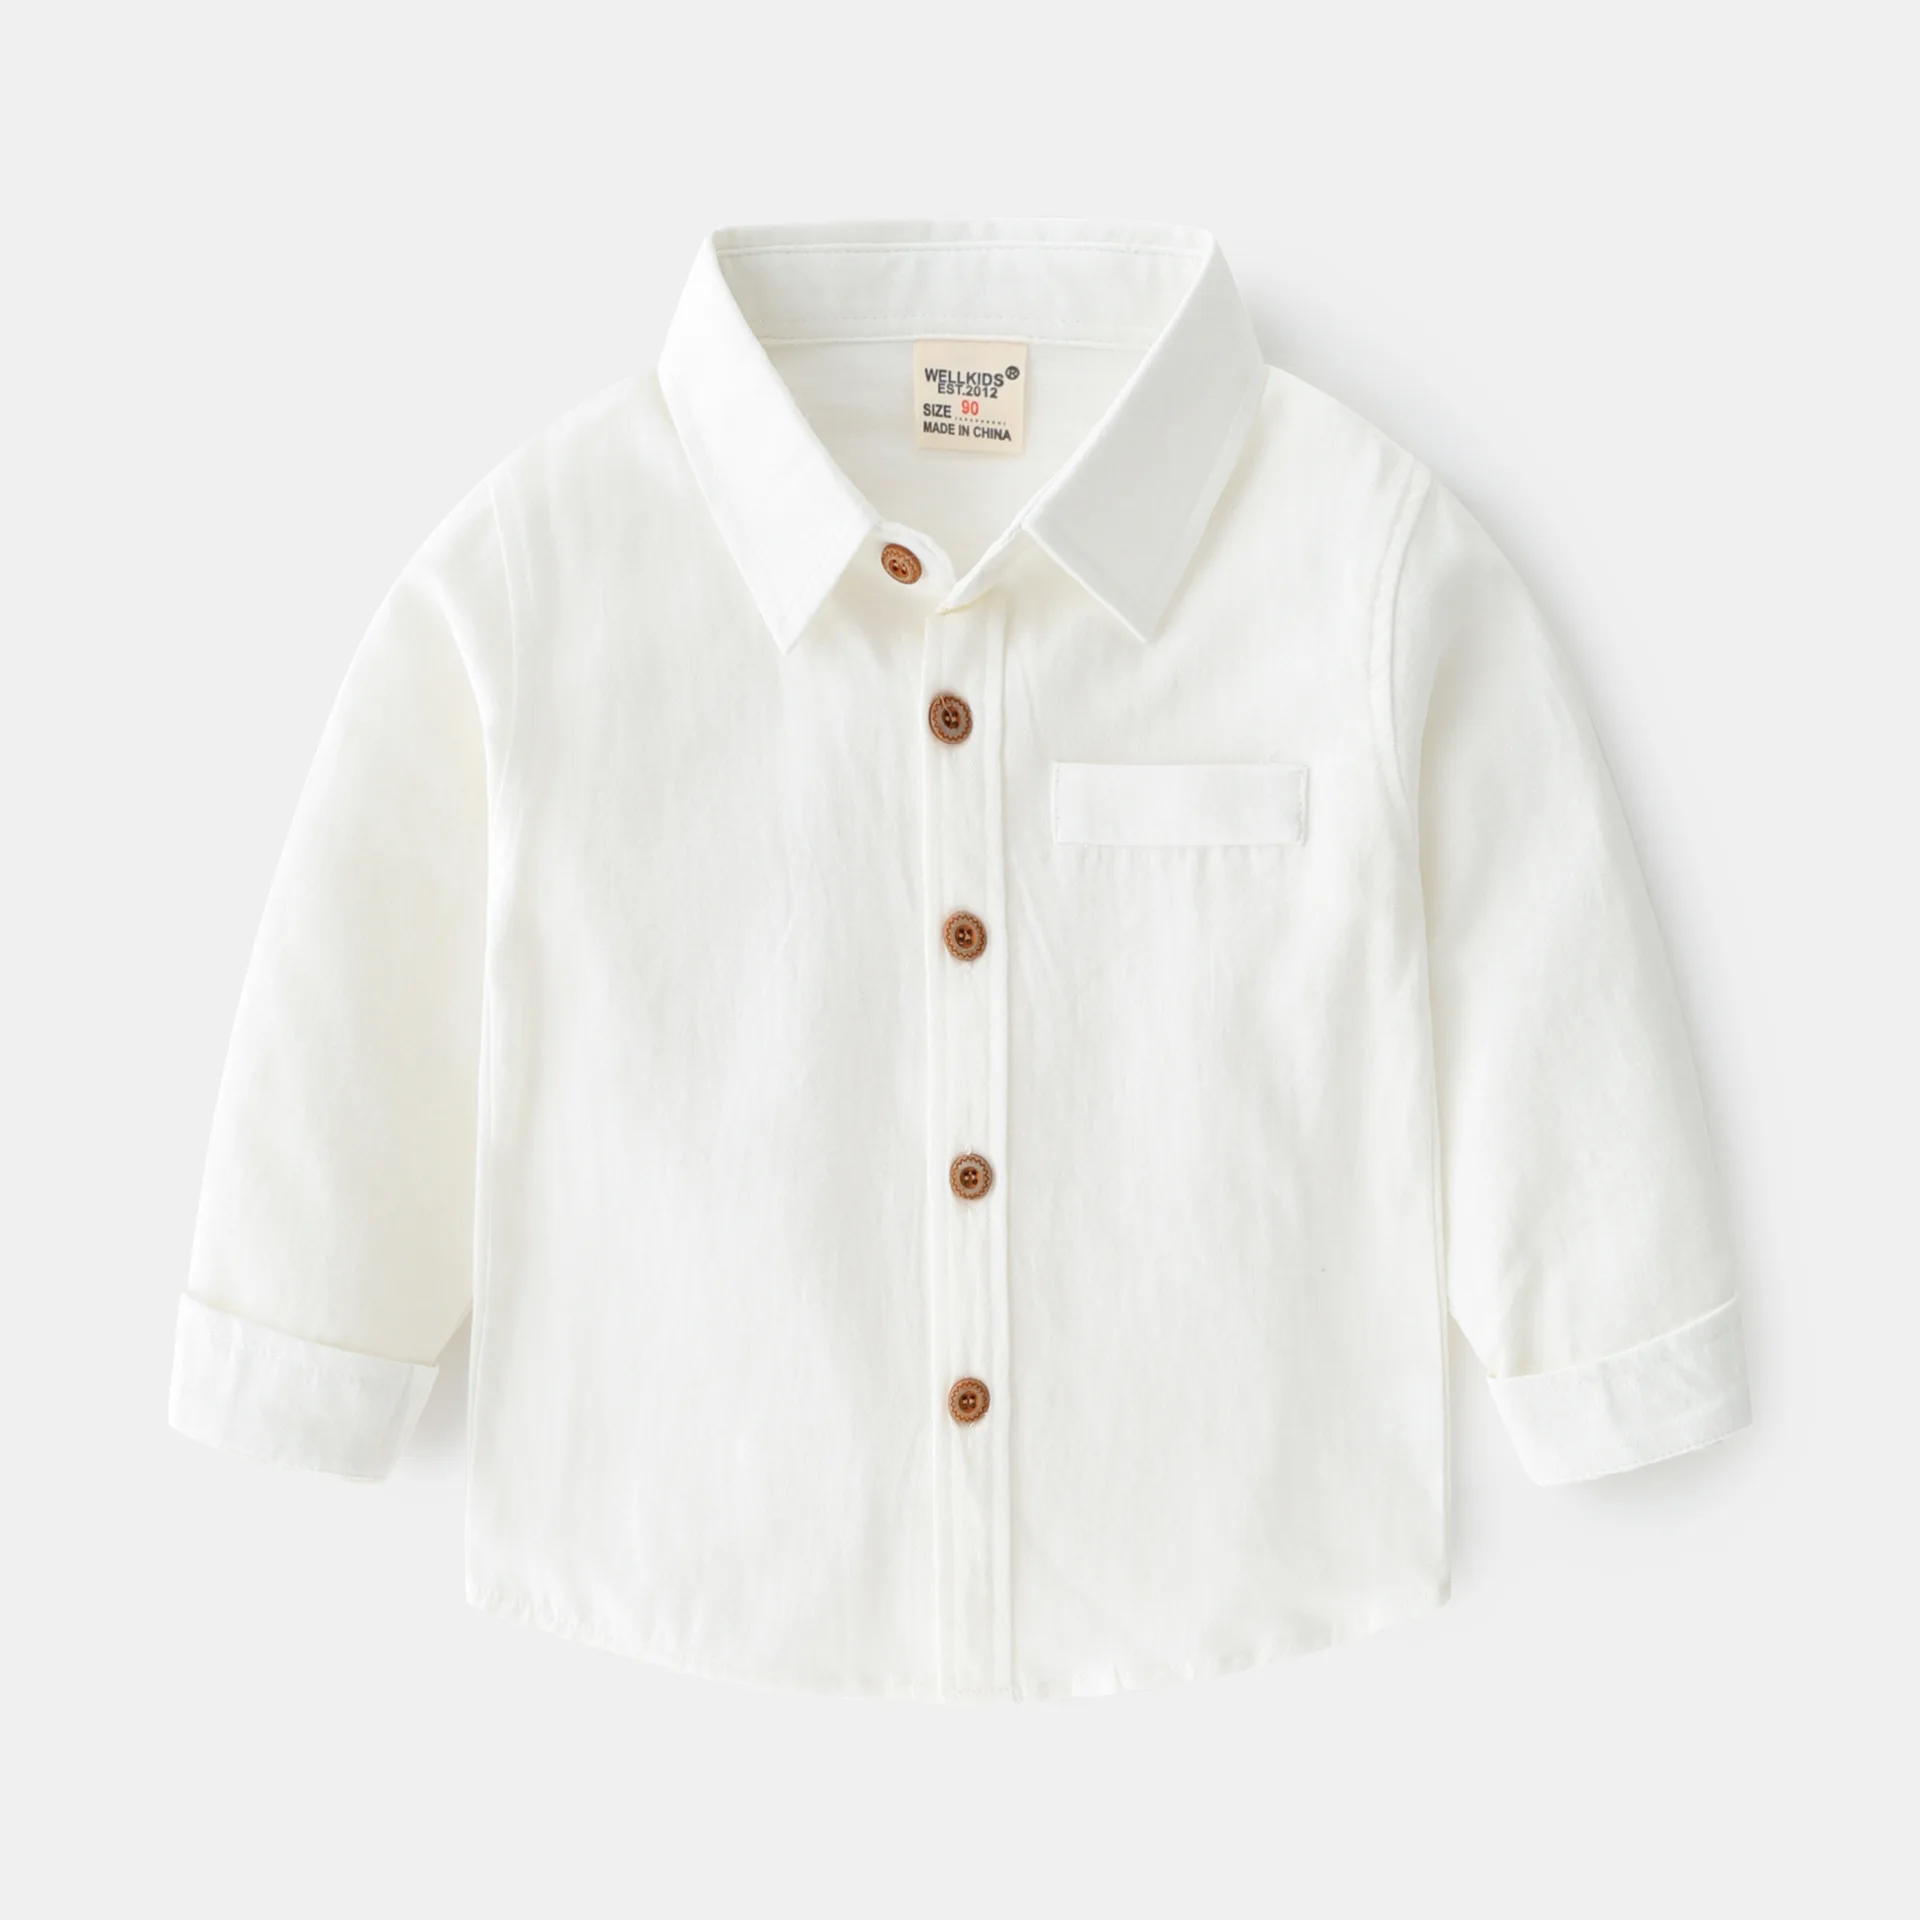 Tanio Białe chłopięce koszule oficjalne garnitury dla smokingi ślubne przycisk sklep